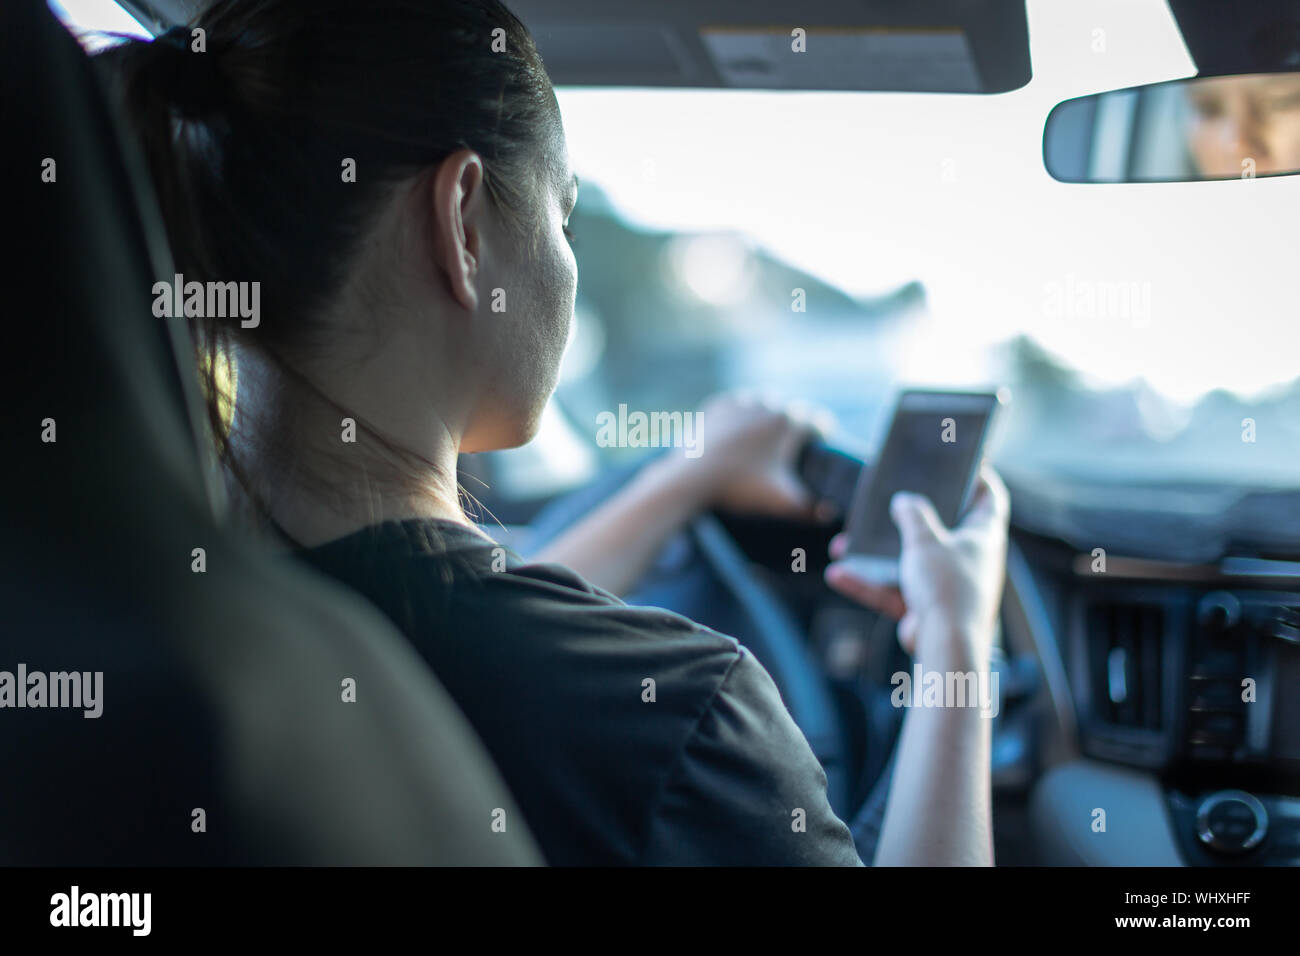 Una persona que utiliza el teléfono mientras se conduce un automóvil. Los mensajes de texto y la conducción. Foto de stock